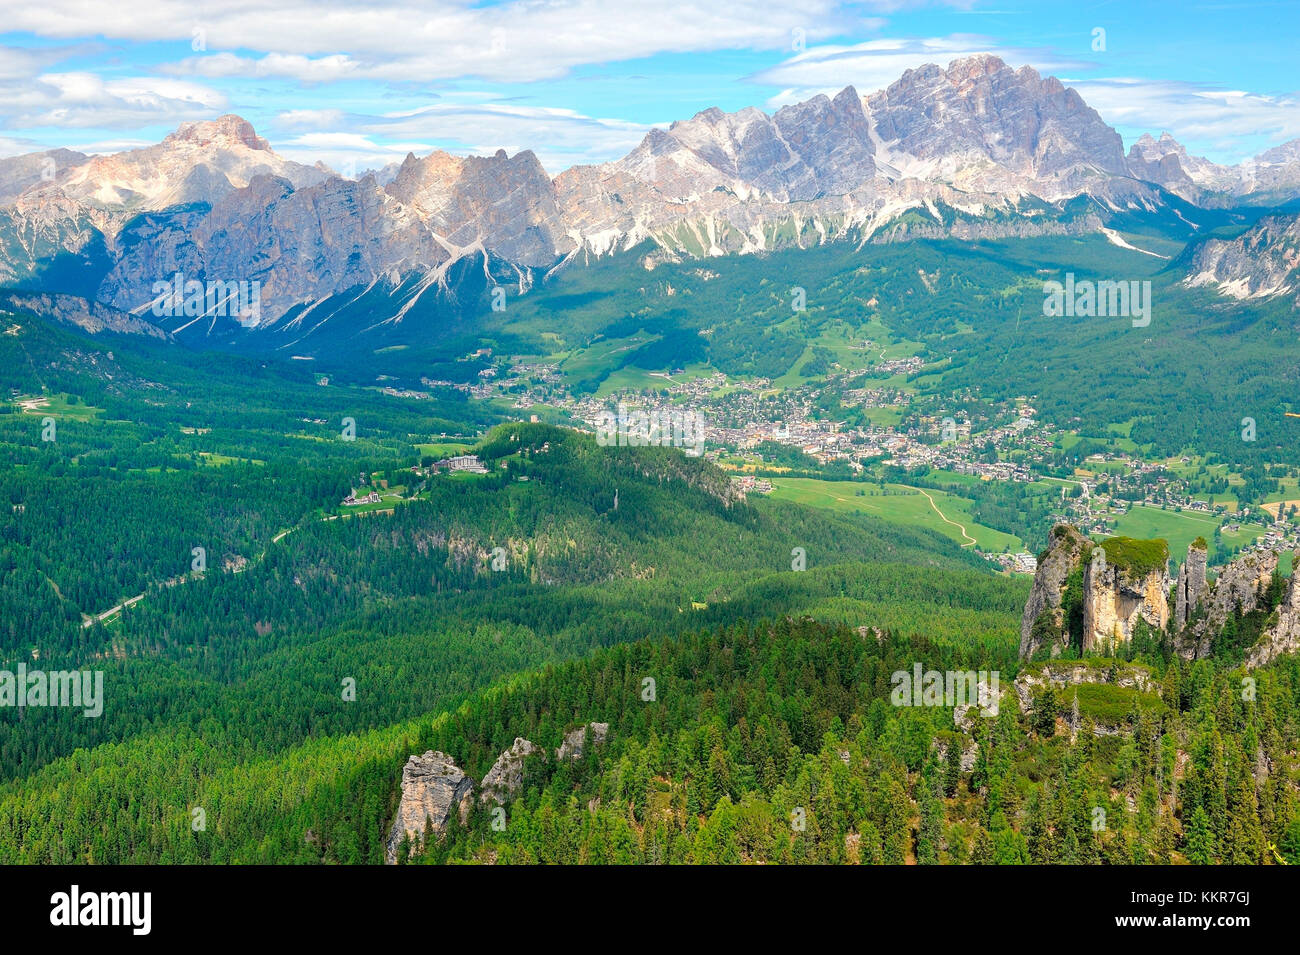 Mount Cristallo and Cortina d'Ampezzo valley, Dolomite Alps, Province of Belluno, Veneto Region, Italy Stock Photo